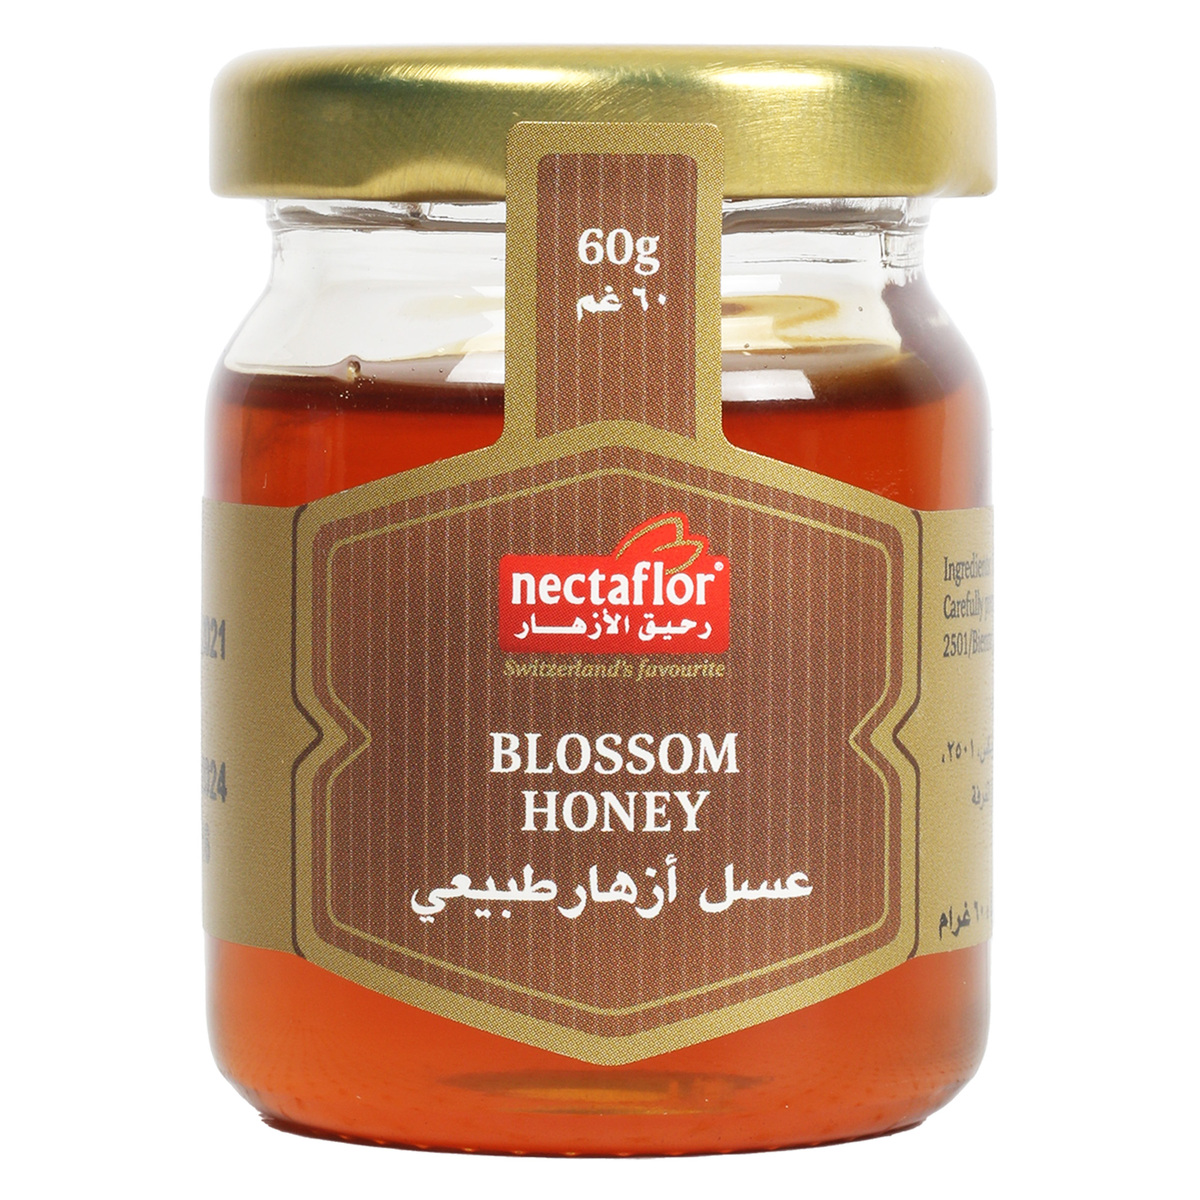 Nectaflor Blossom Honey 60g